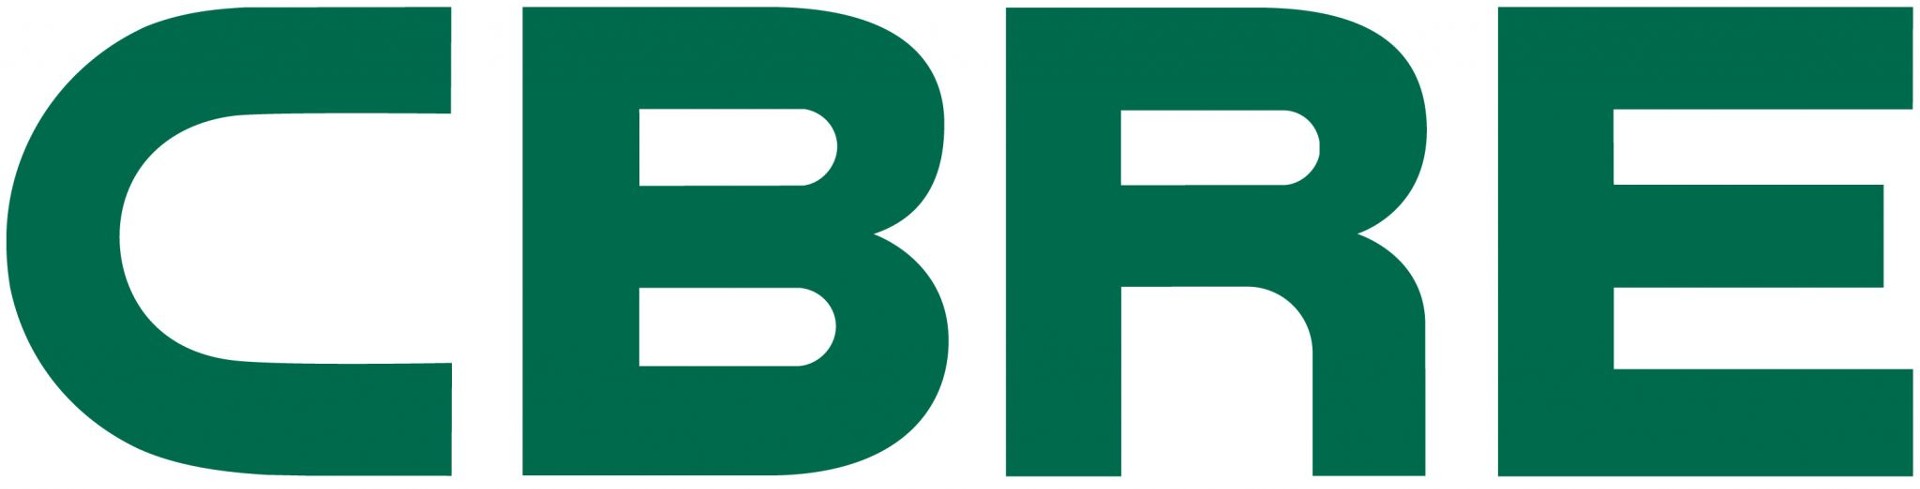 Logo CBRE Sp.zo.o